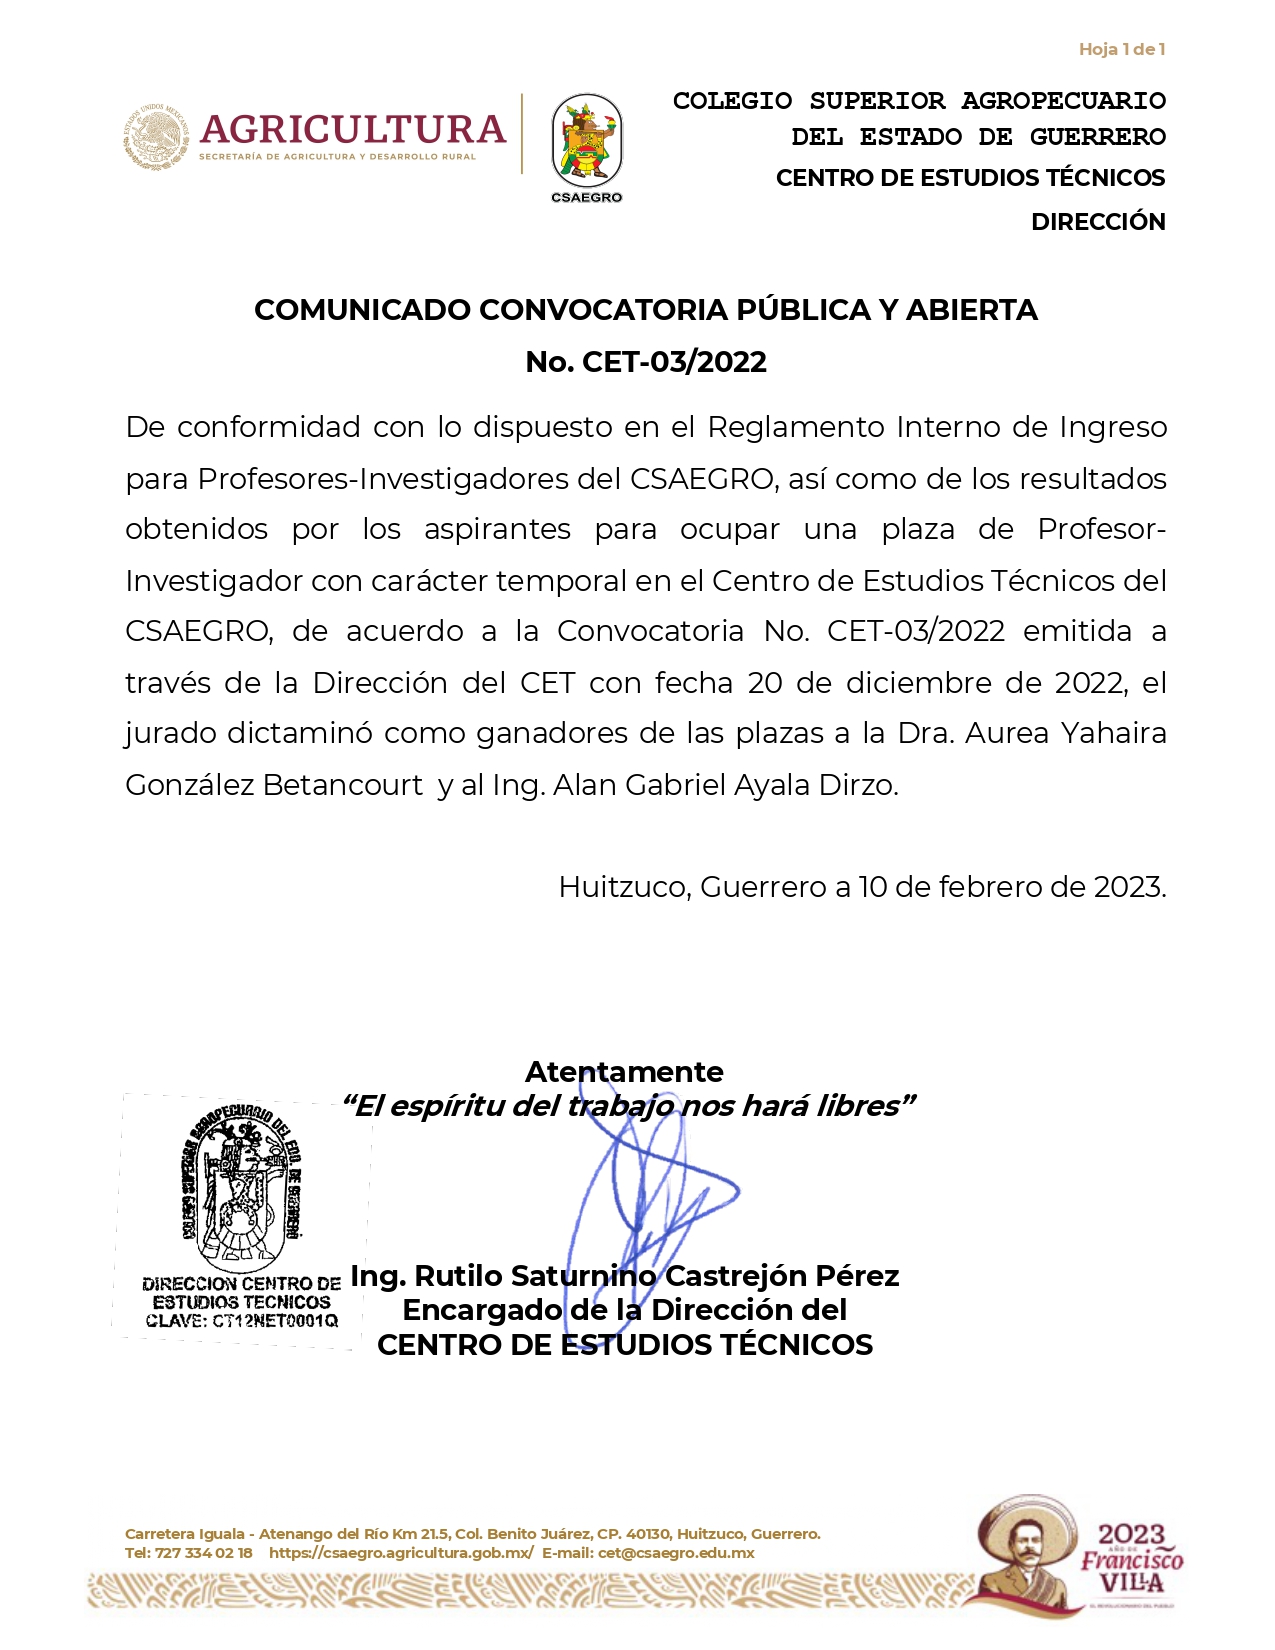 COMUNICADO CONVOCATORIA PÚBLICA Y ABIERTA No. CET-03/2022